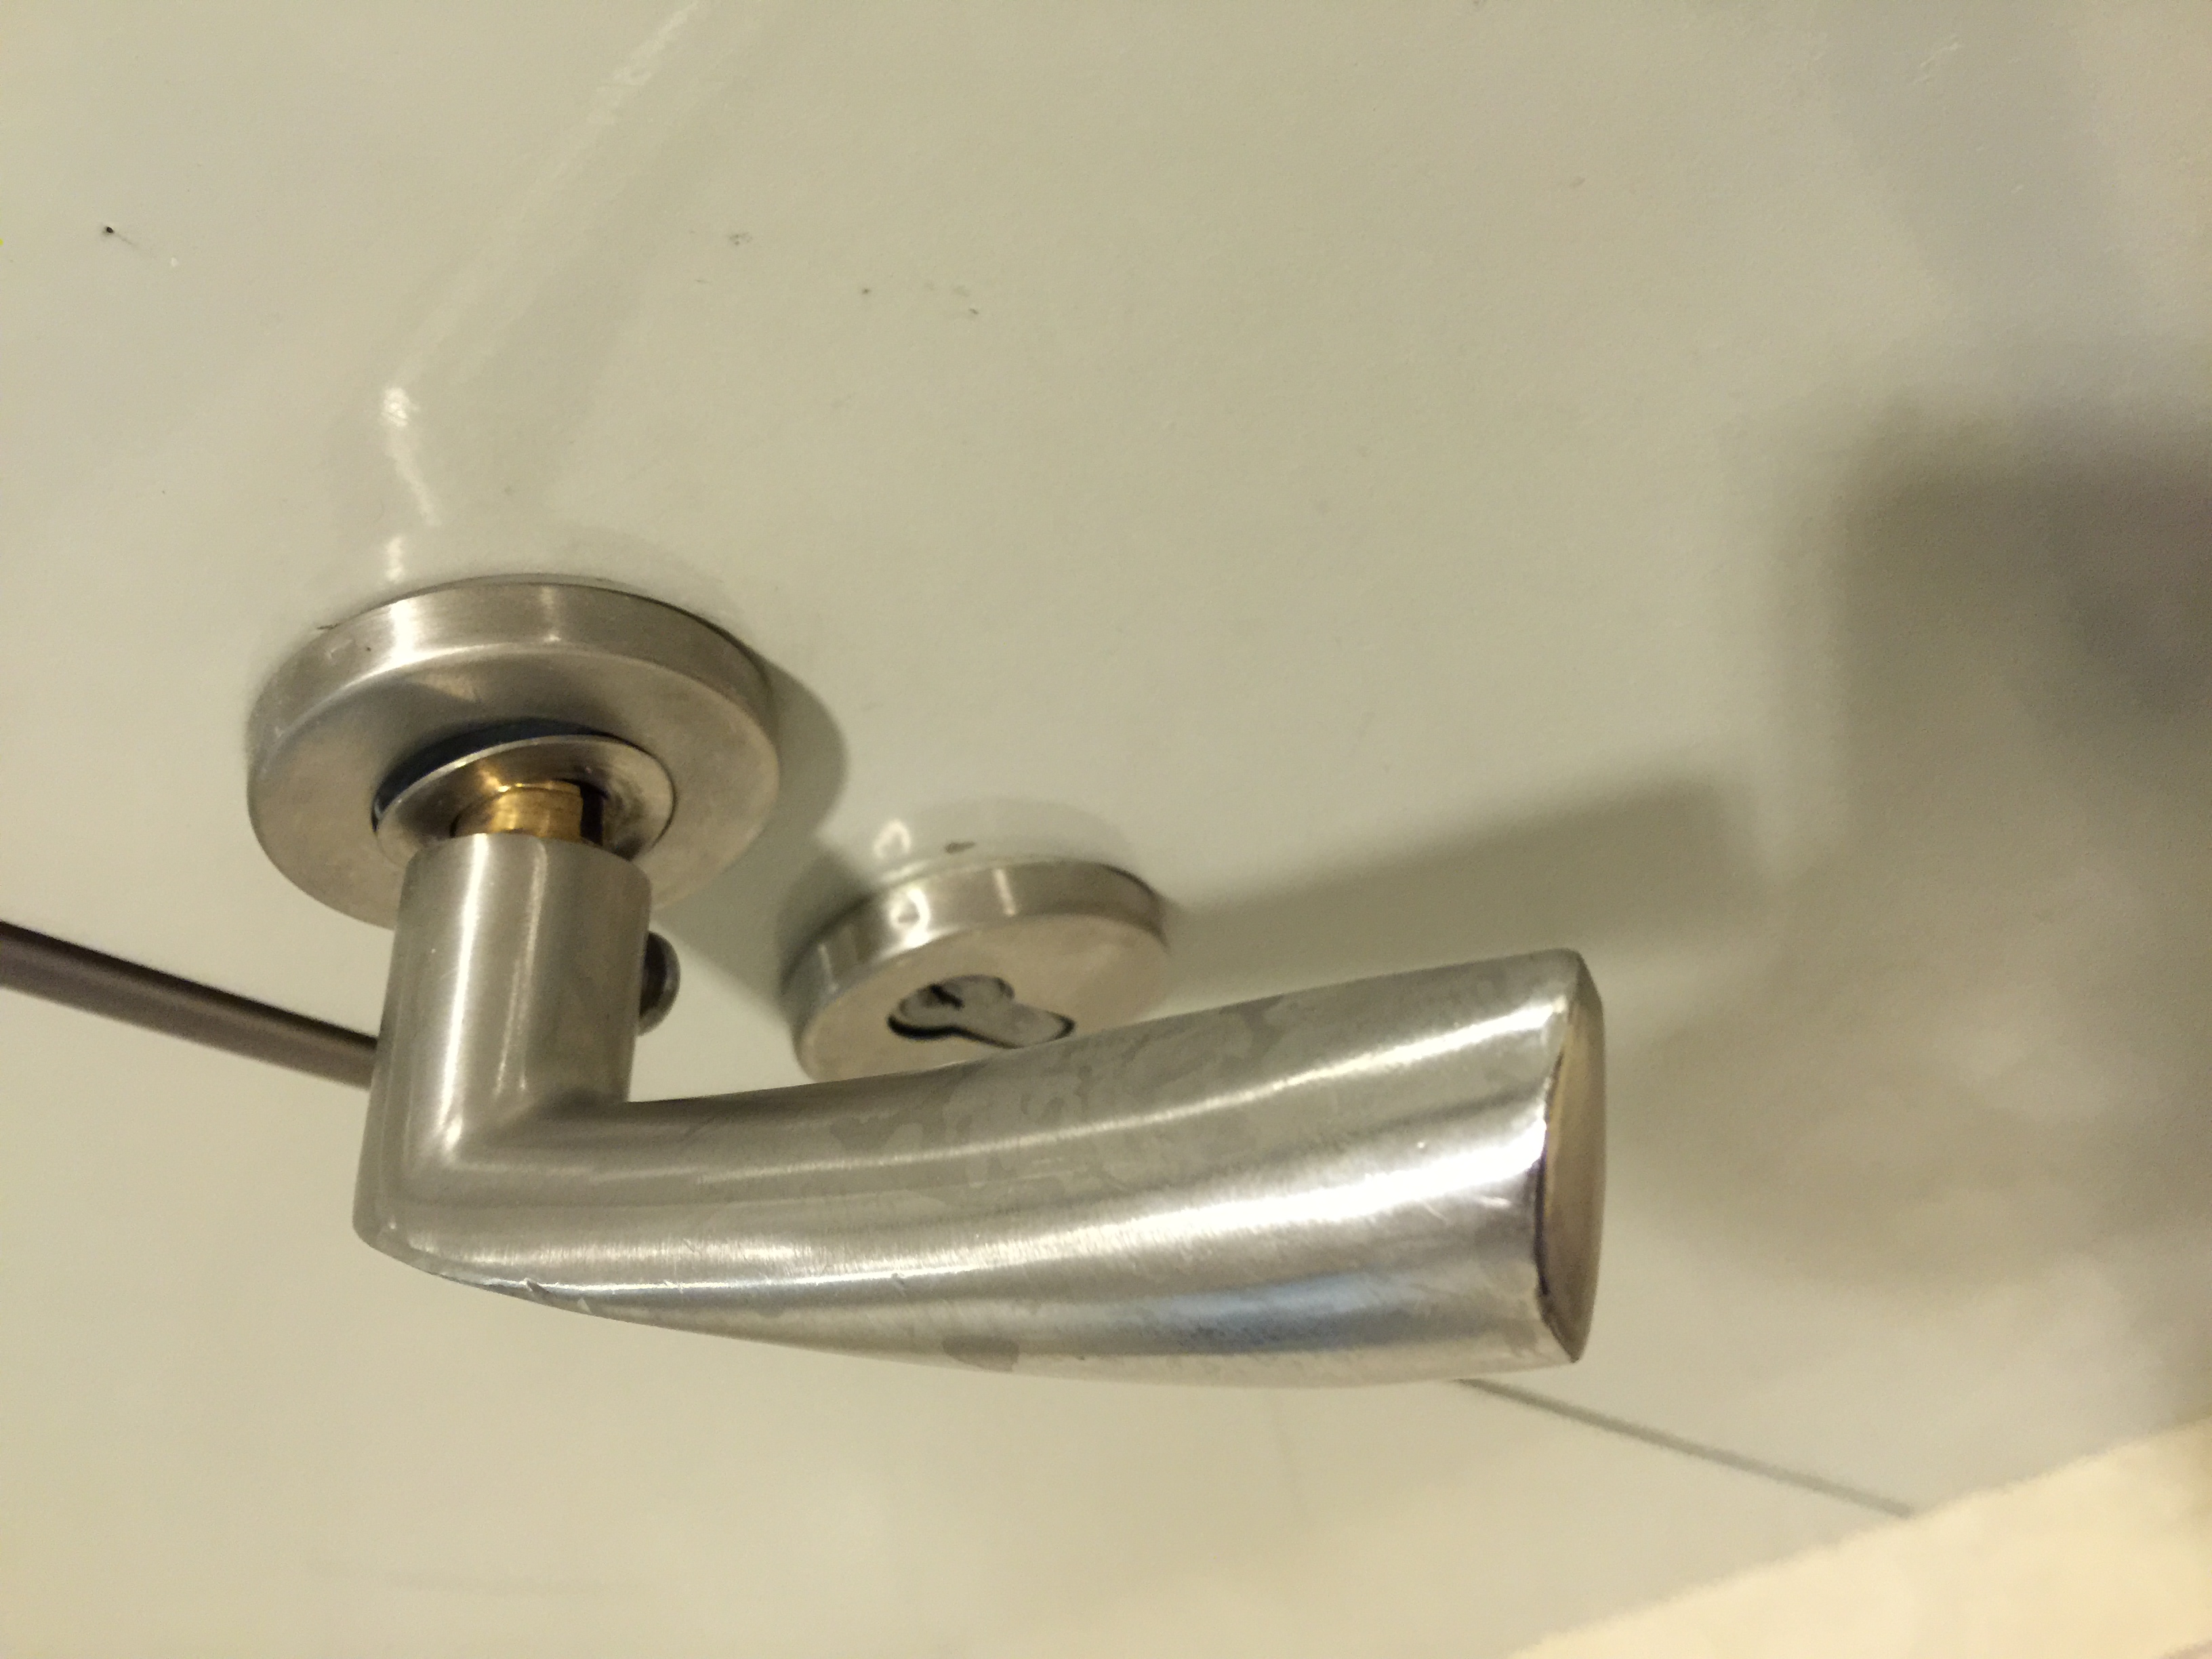 Stainless steel door handle falling off